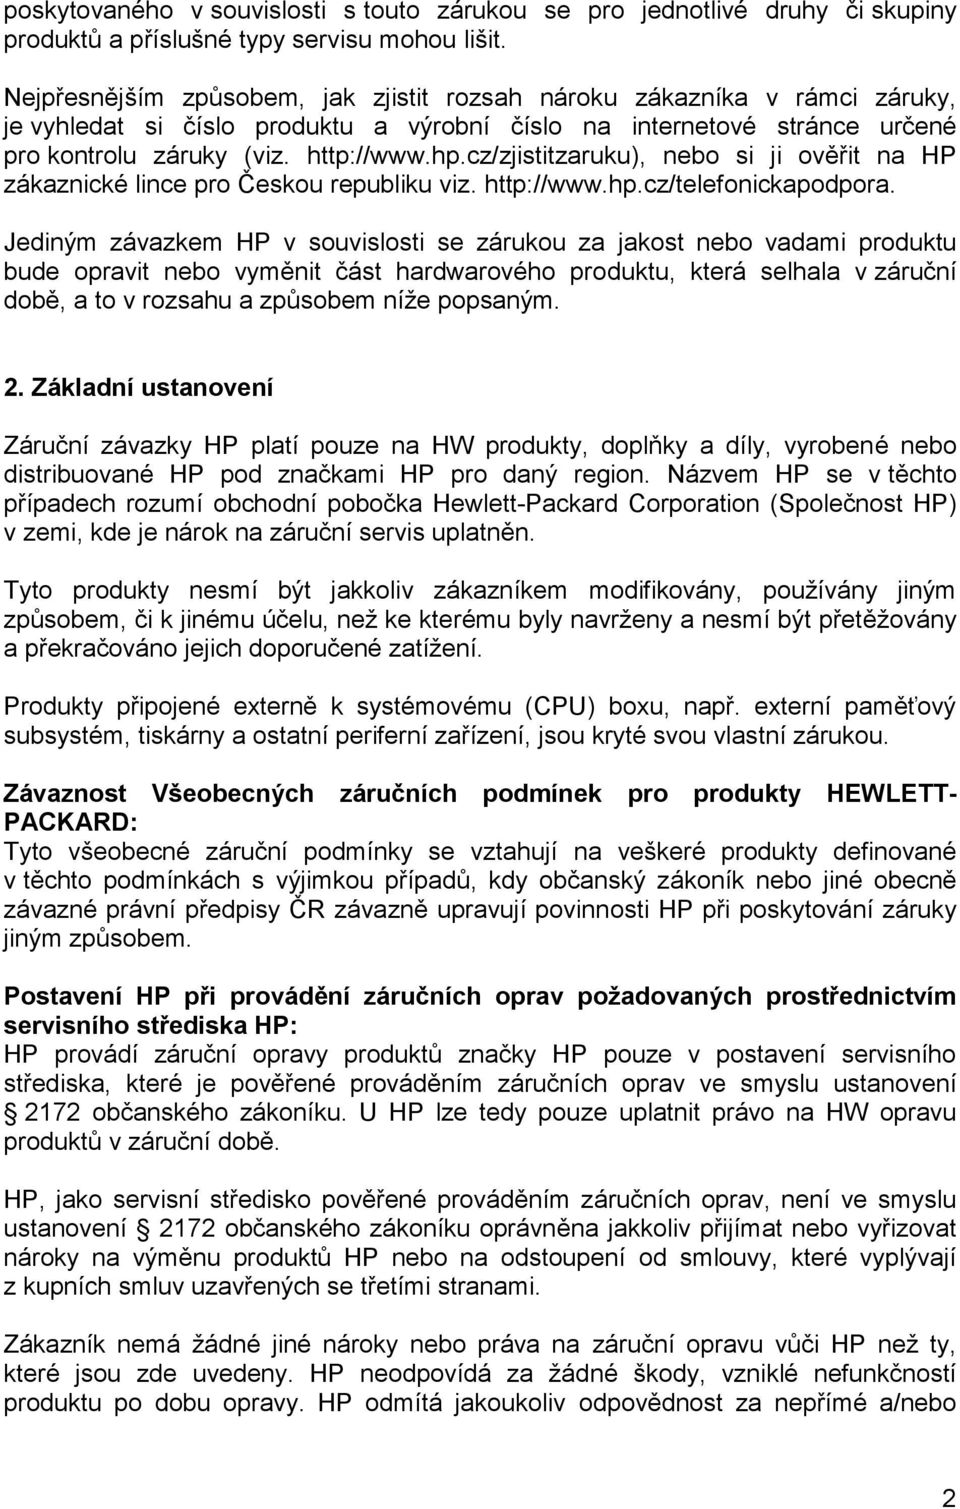 cz/zjistitzaruku), nebo si ji ověřit na HP zákaznické lince pro Českou republiku viz. http://www.hp.cz/telefonickapodpora.